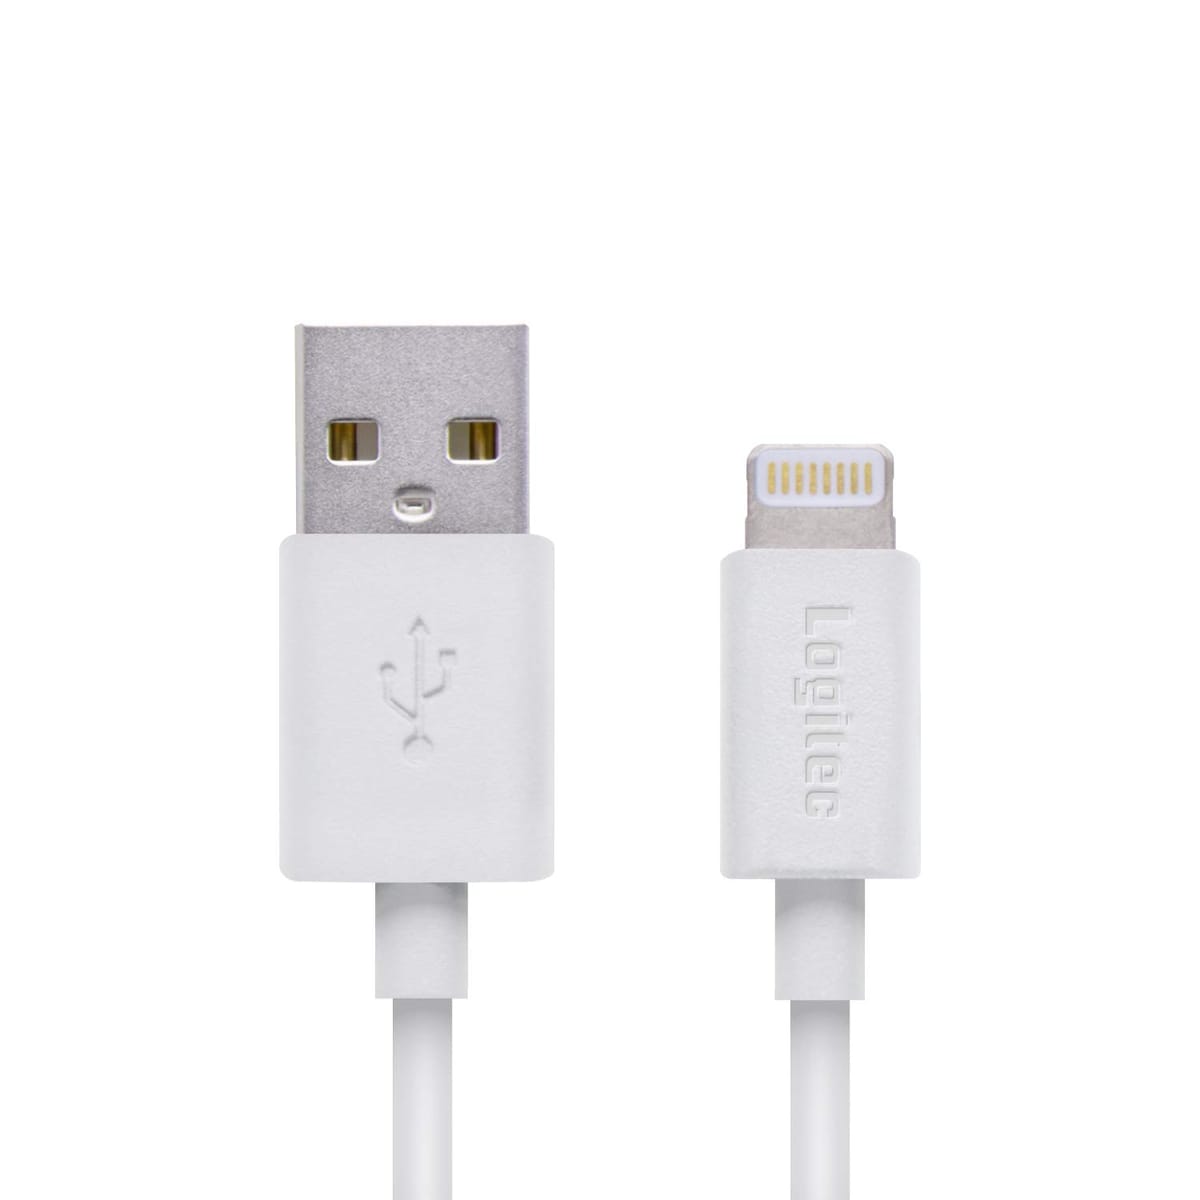 ロジテック ライトニングケーブル iphone 充電ケーブル apple認証 スリムコネクター採用し ケースを選ばない iPhone iPad iPod 対応 2.0m ホワイト LHC-FUAL20WH